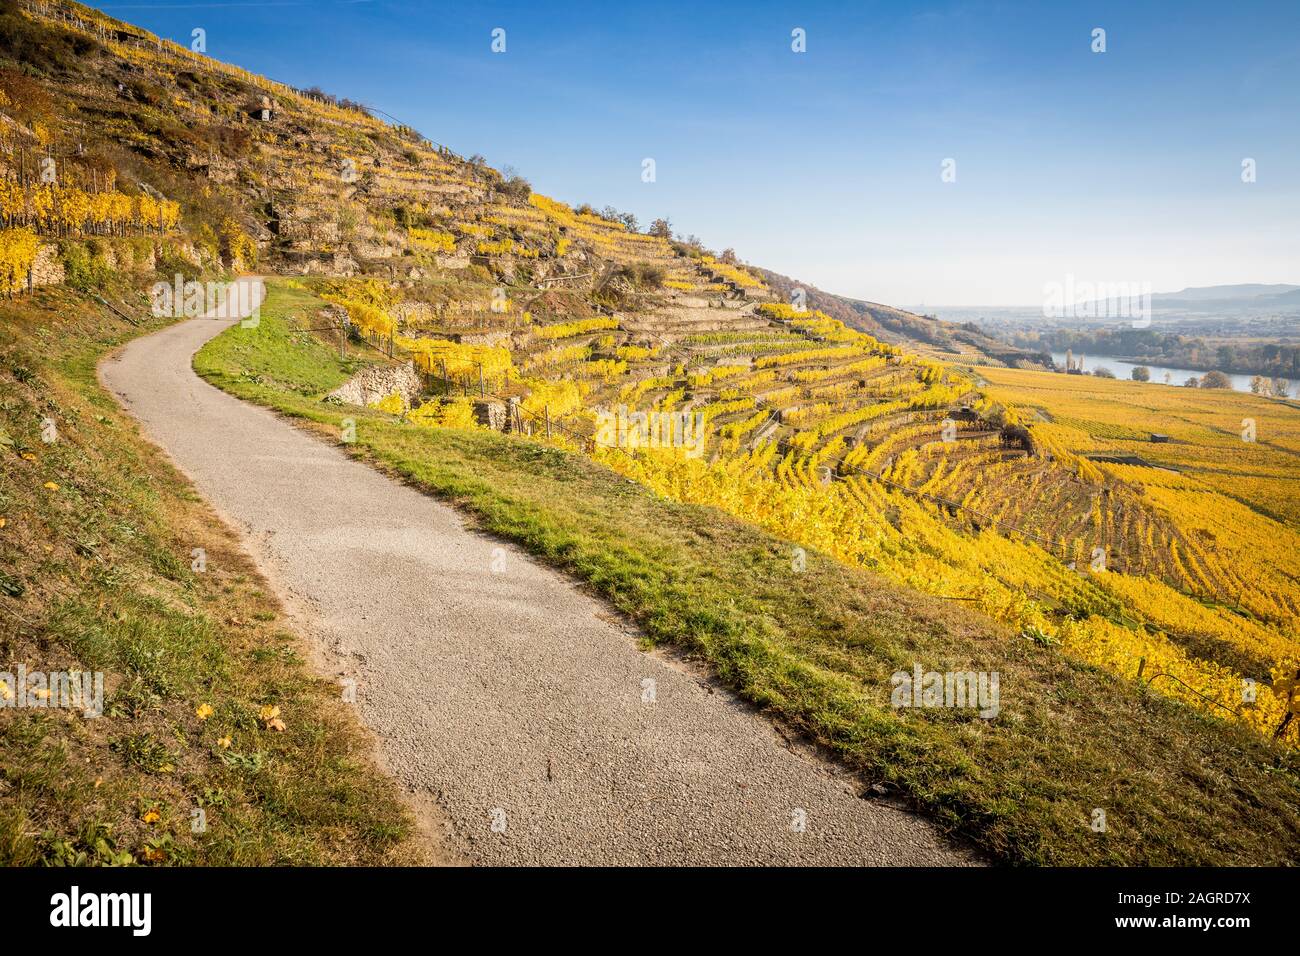 Chemin à travers les terrasses de la région viticole de Wachau, Autriche - image Banque D'Images